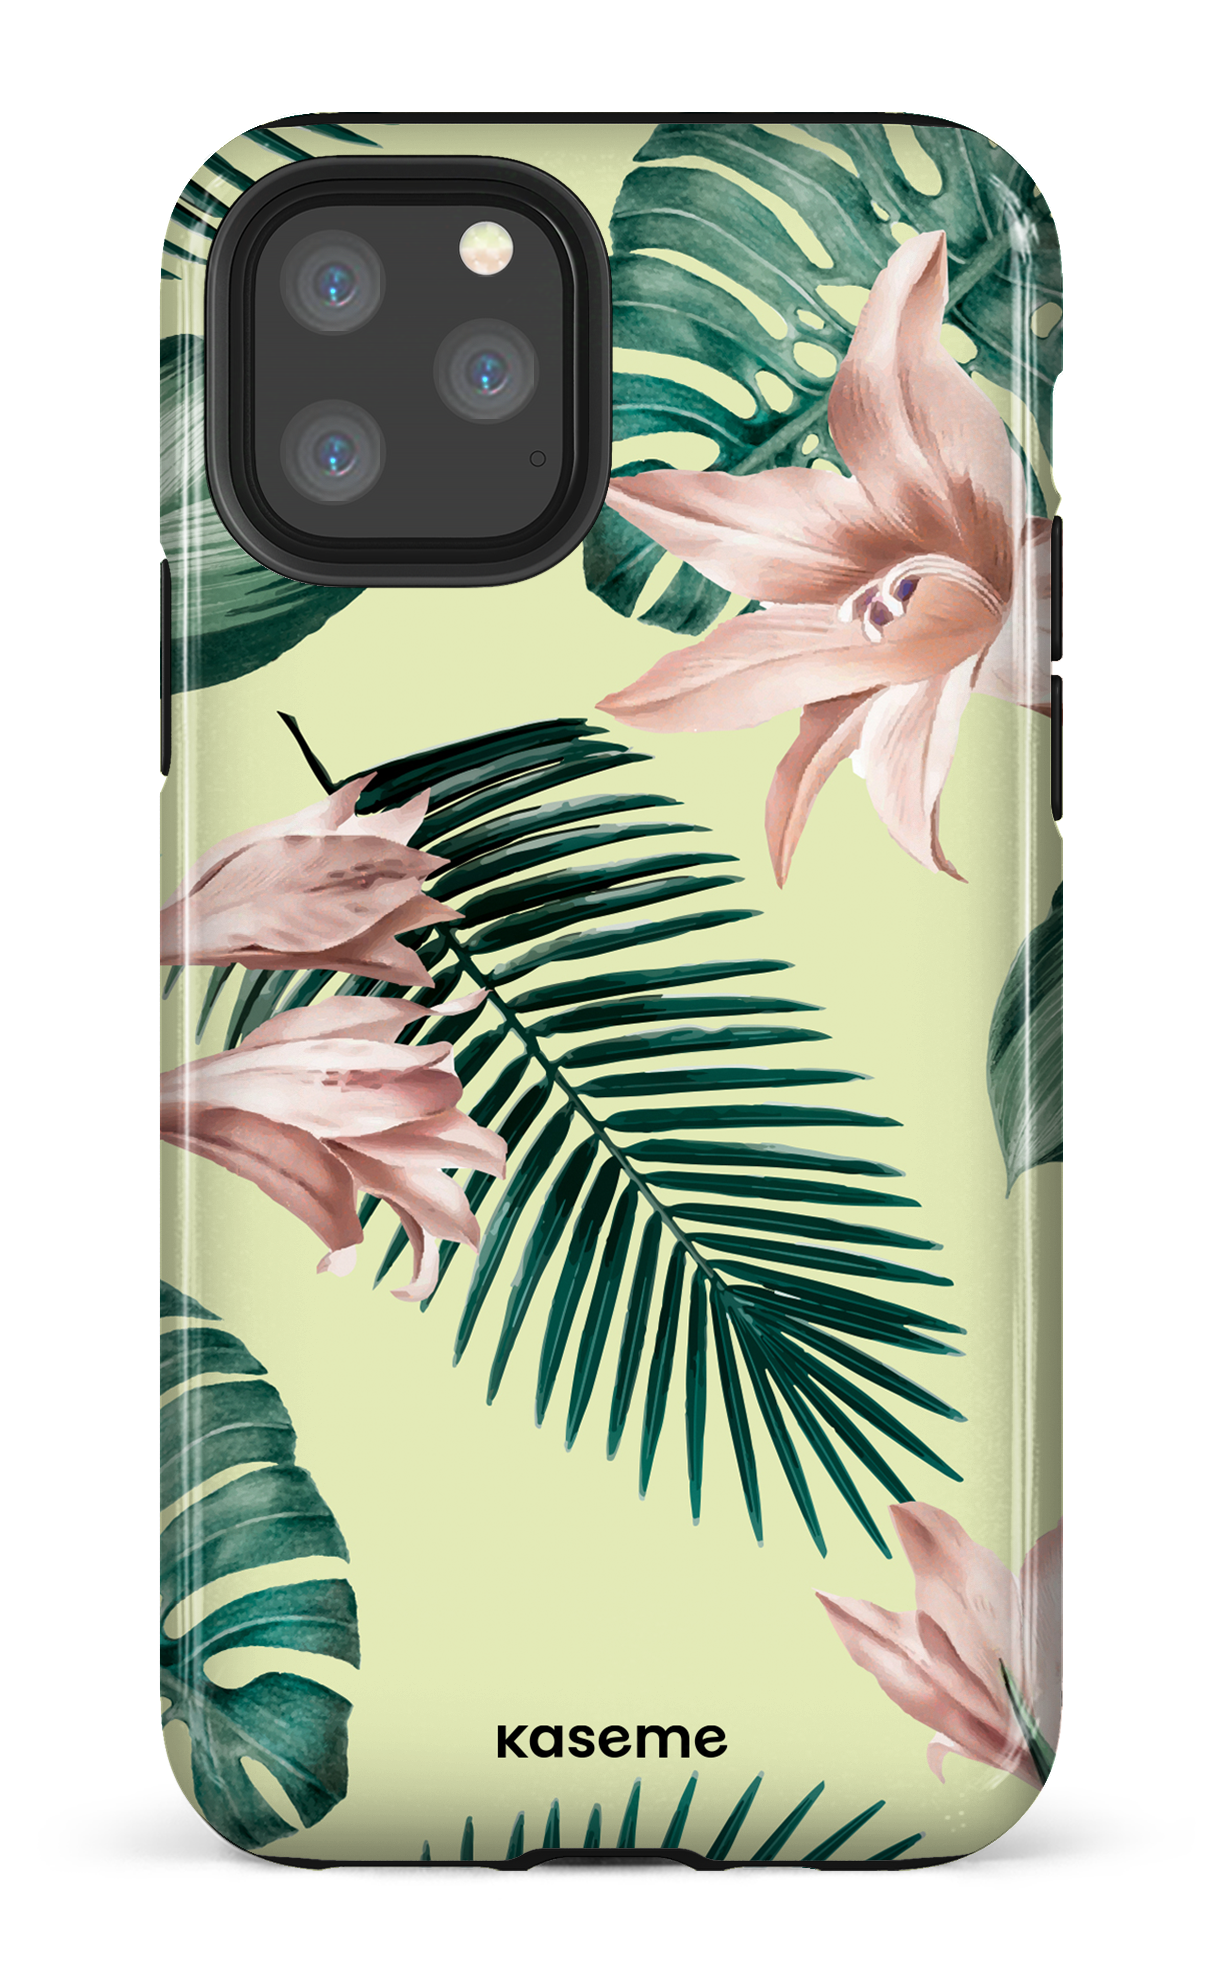 Maui - iPhone 11 Pro